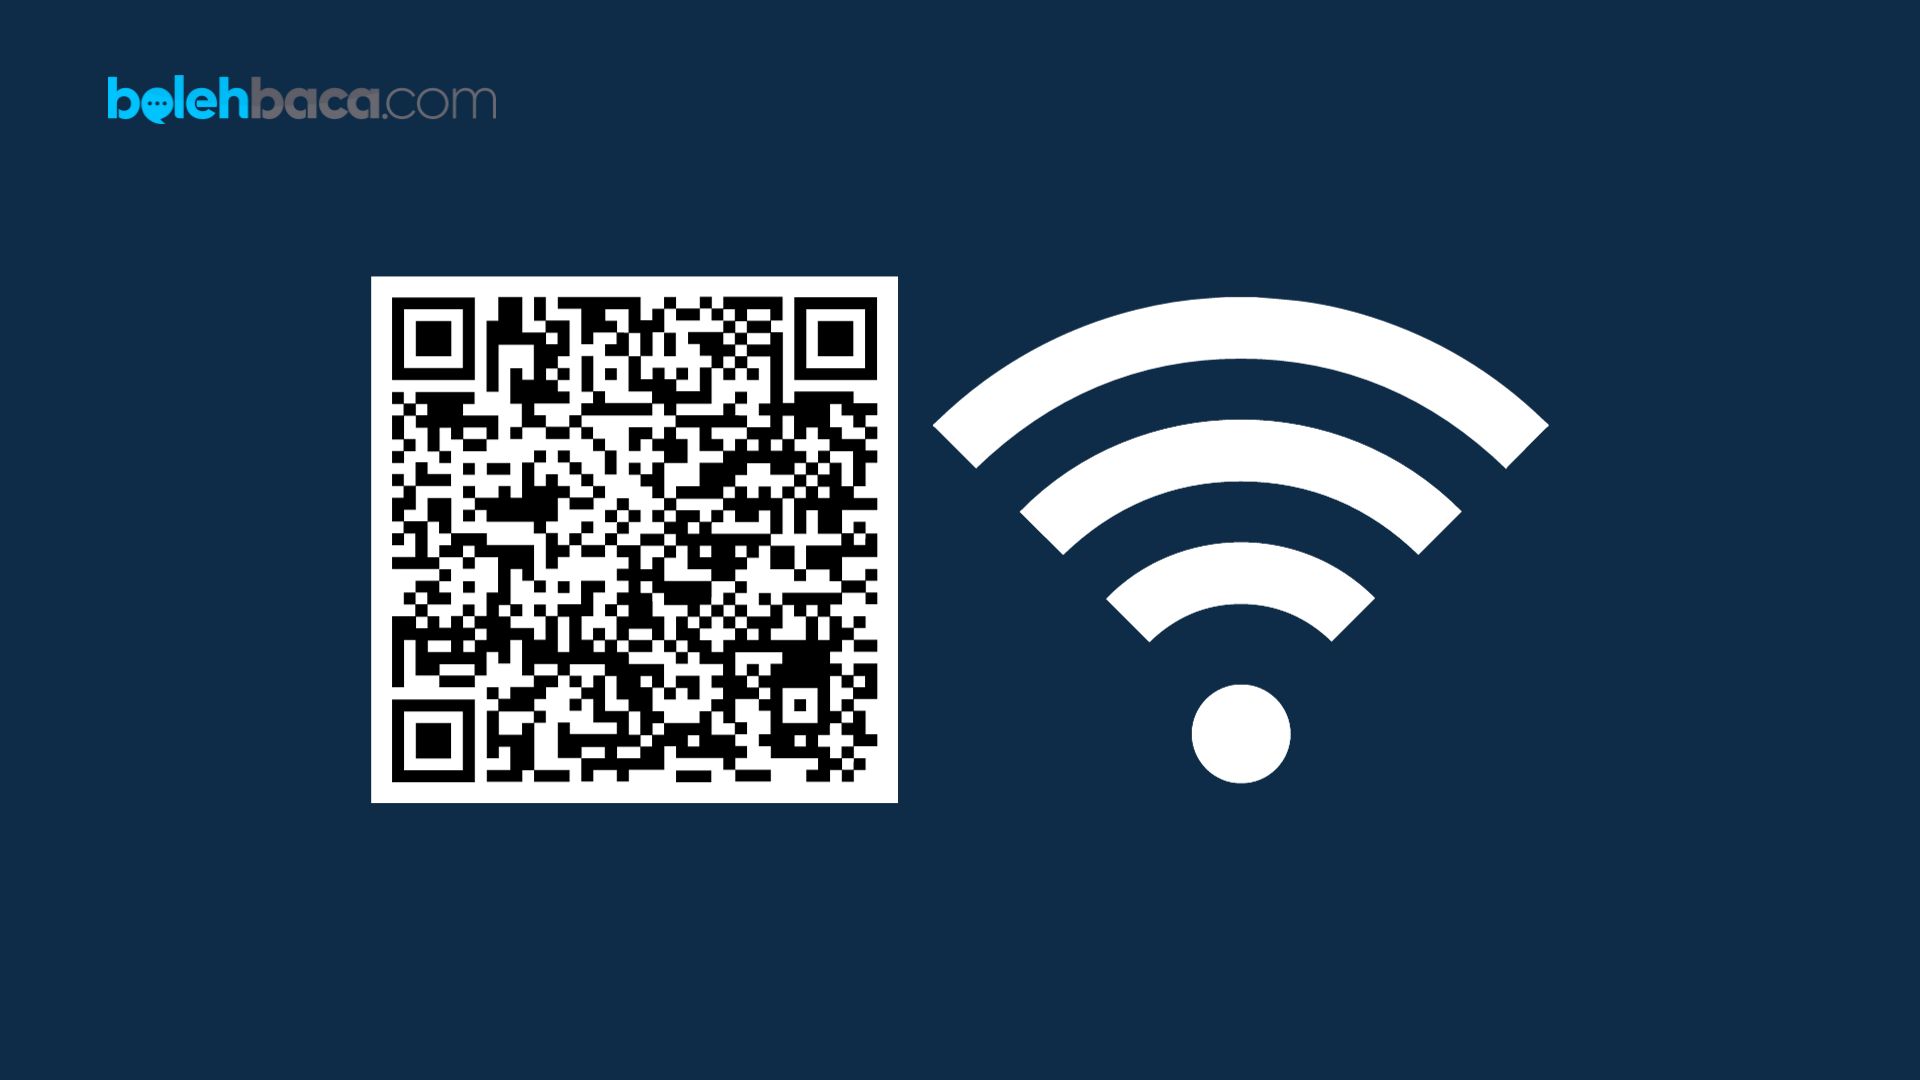 Aplikasi berbagi wifi lewat barcode